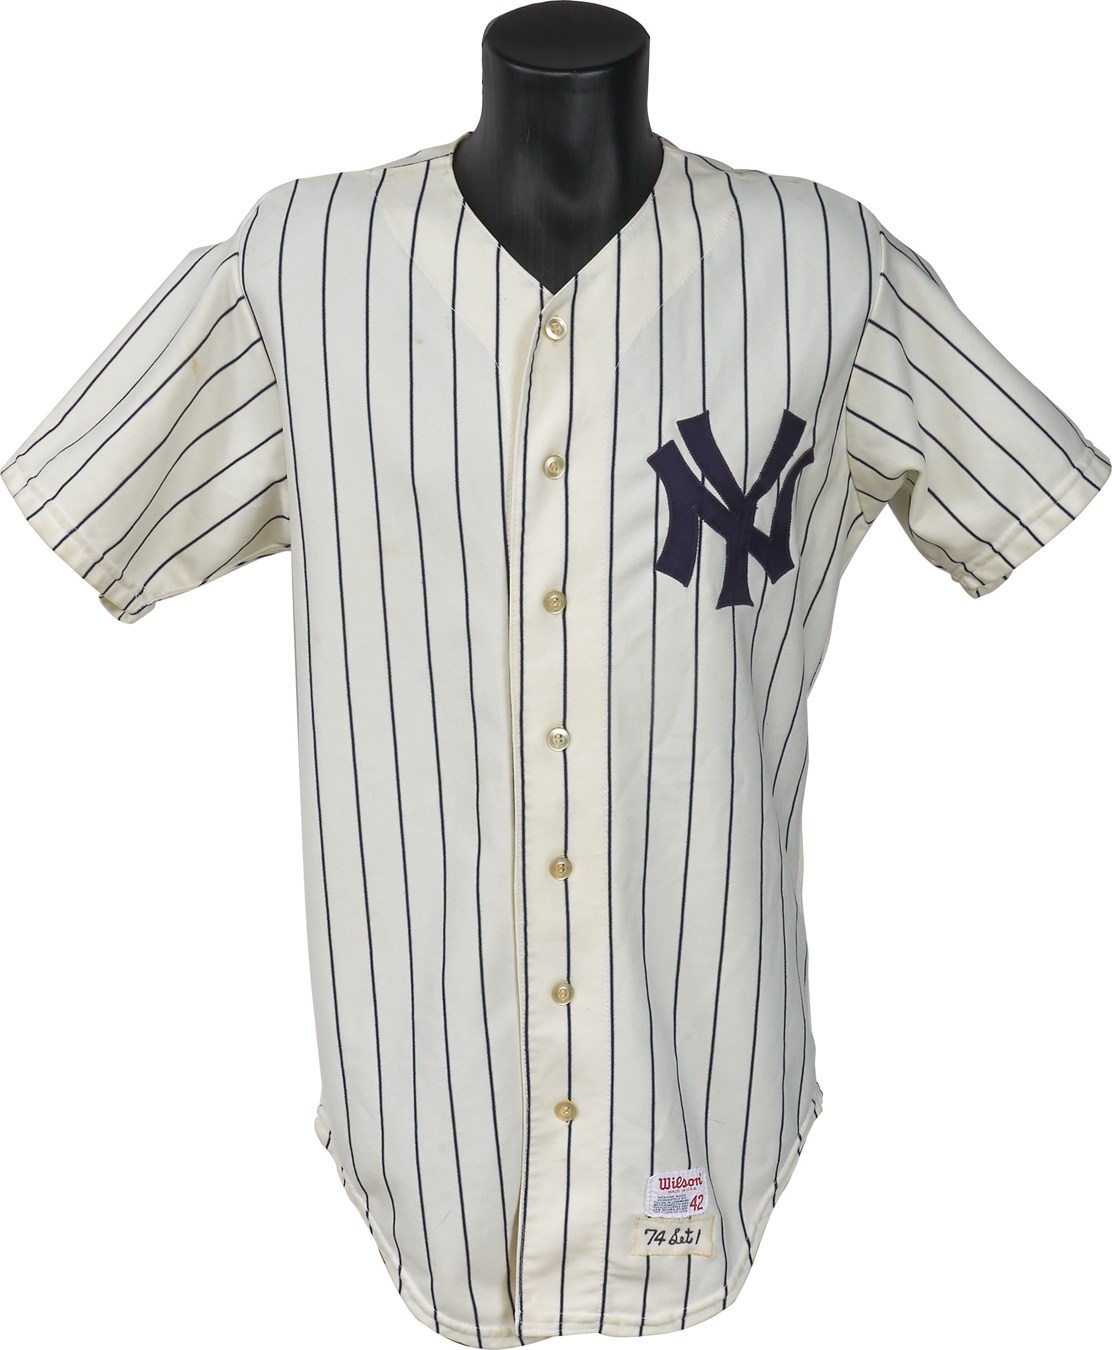 NY Yankees, Giants & Mets - 1974 Graig Nettles New York Yankees Game Worn Jersey